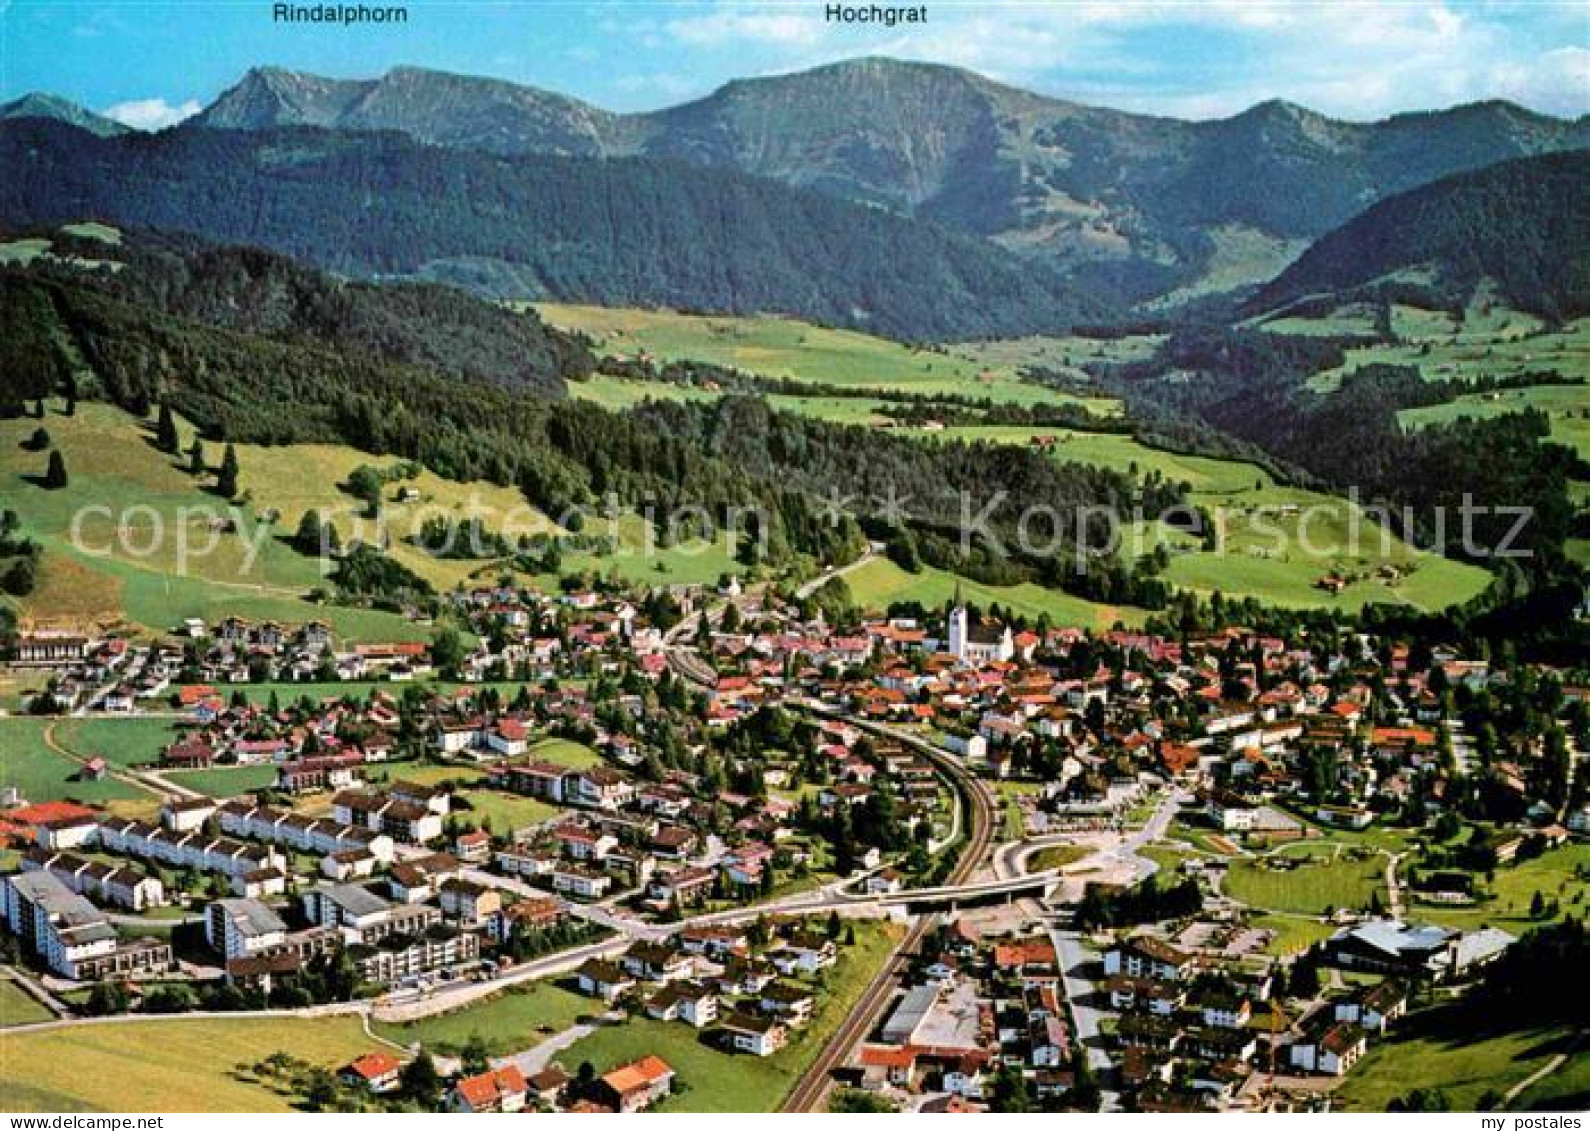 72901760 Oberstaufen Mit Hochgrat Und Rindalphorn Allgaeuer Alpen Fliegeraufnahm - Oberstaufen